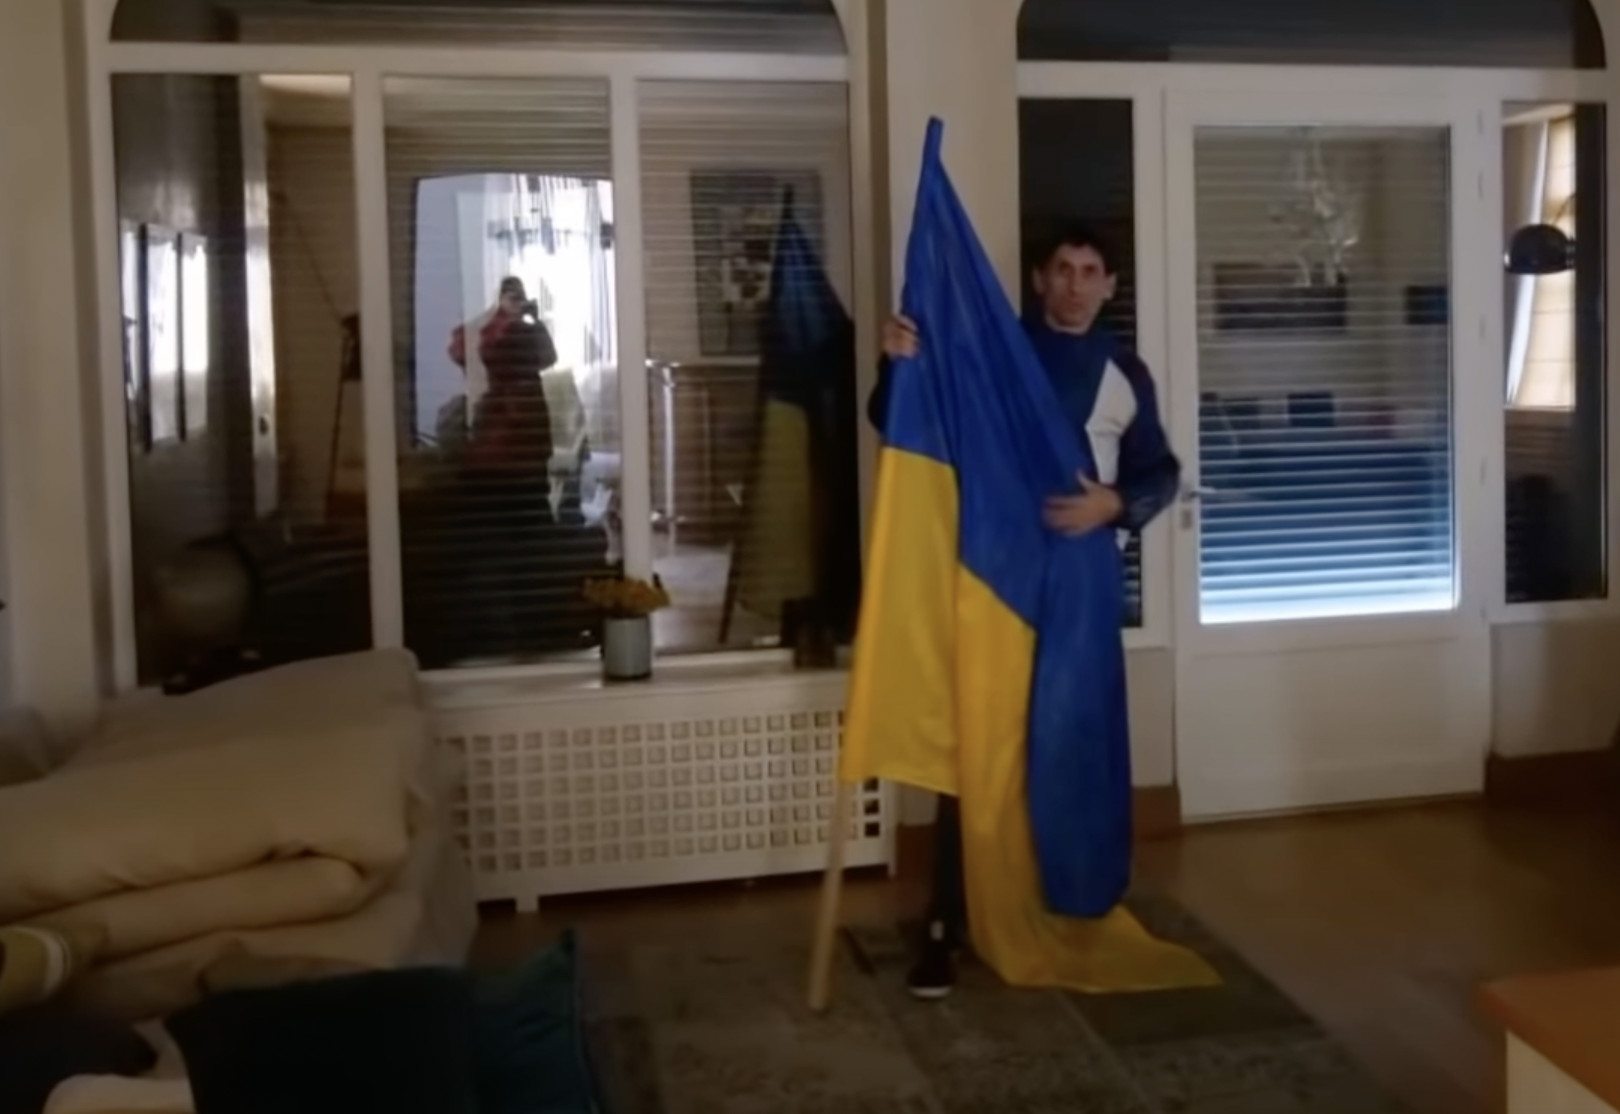 Des militants occupent le palais de Poutine en France, prévoyant d’y héberger des réfugiés ukrainiens (vidéo)